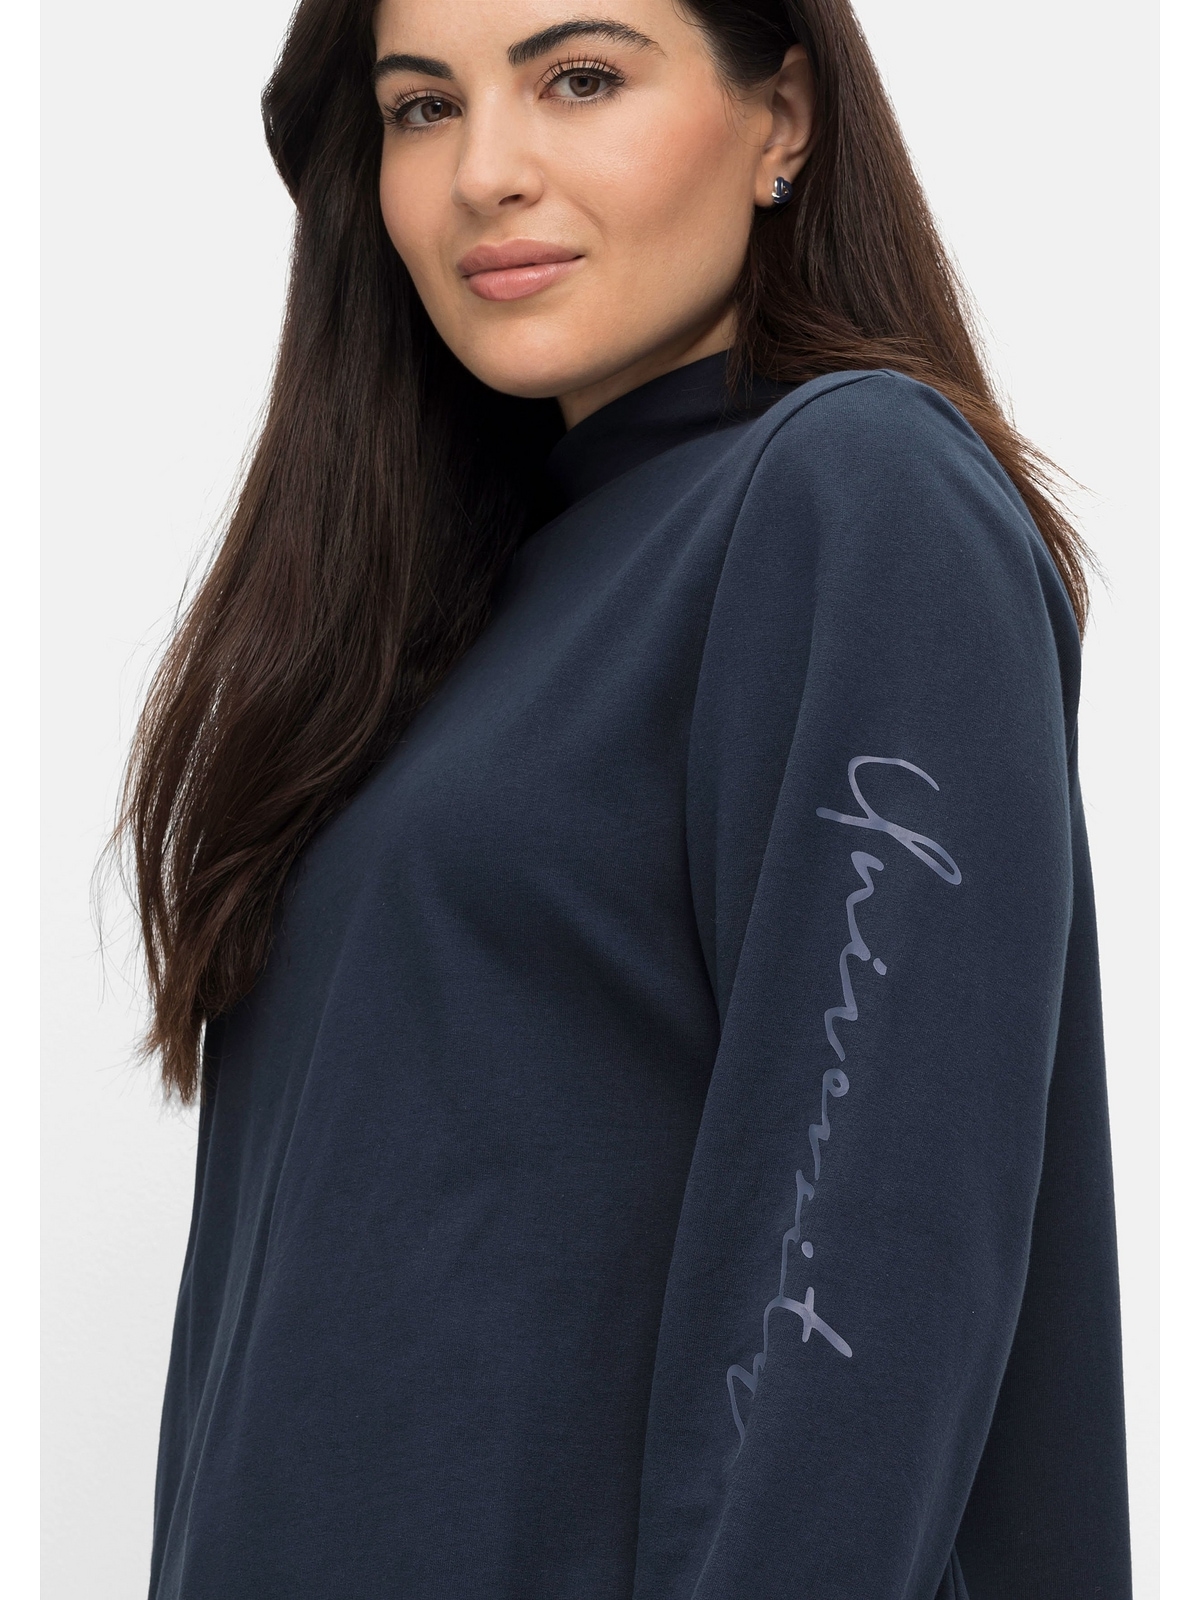 Stehkragen Sheego mit Sweatshirt »Große Größen« und Wordingprint